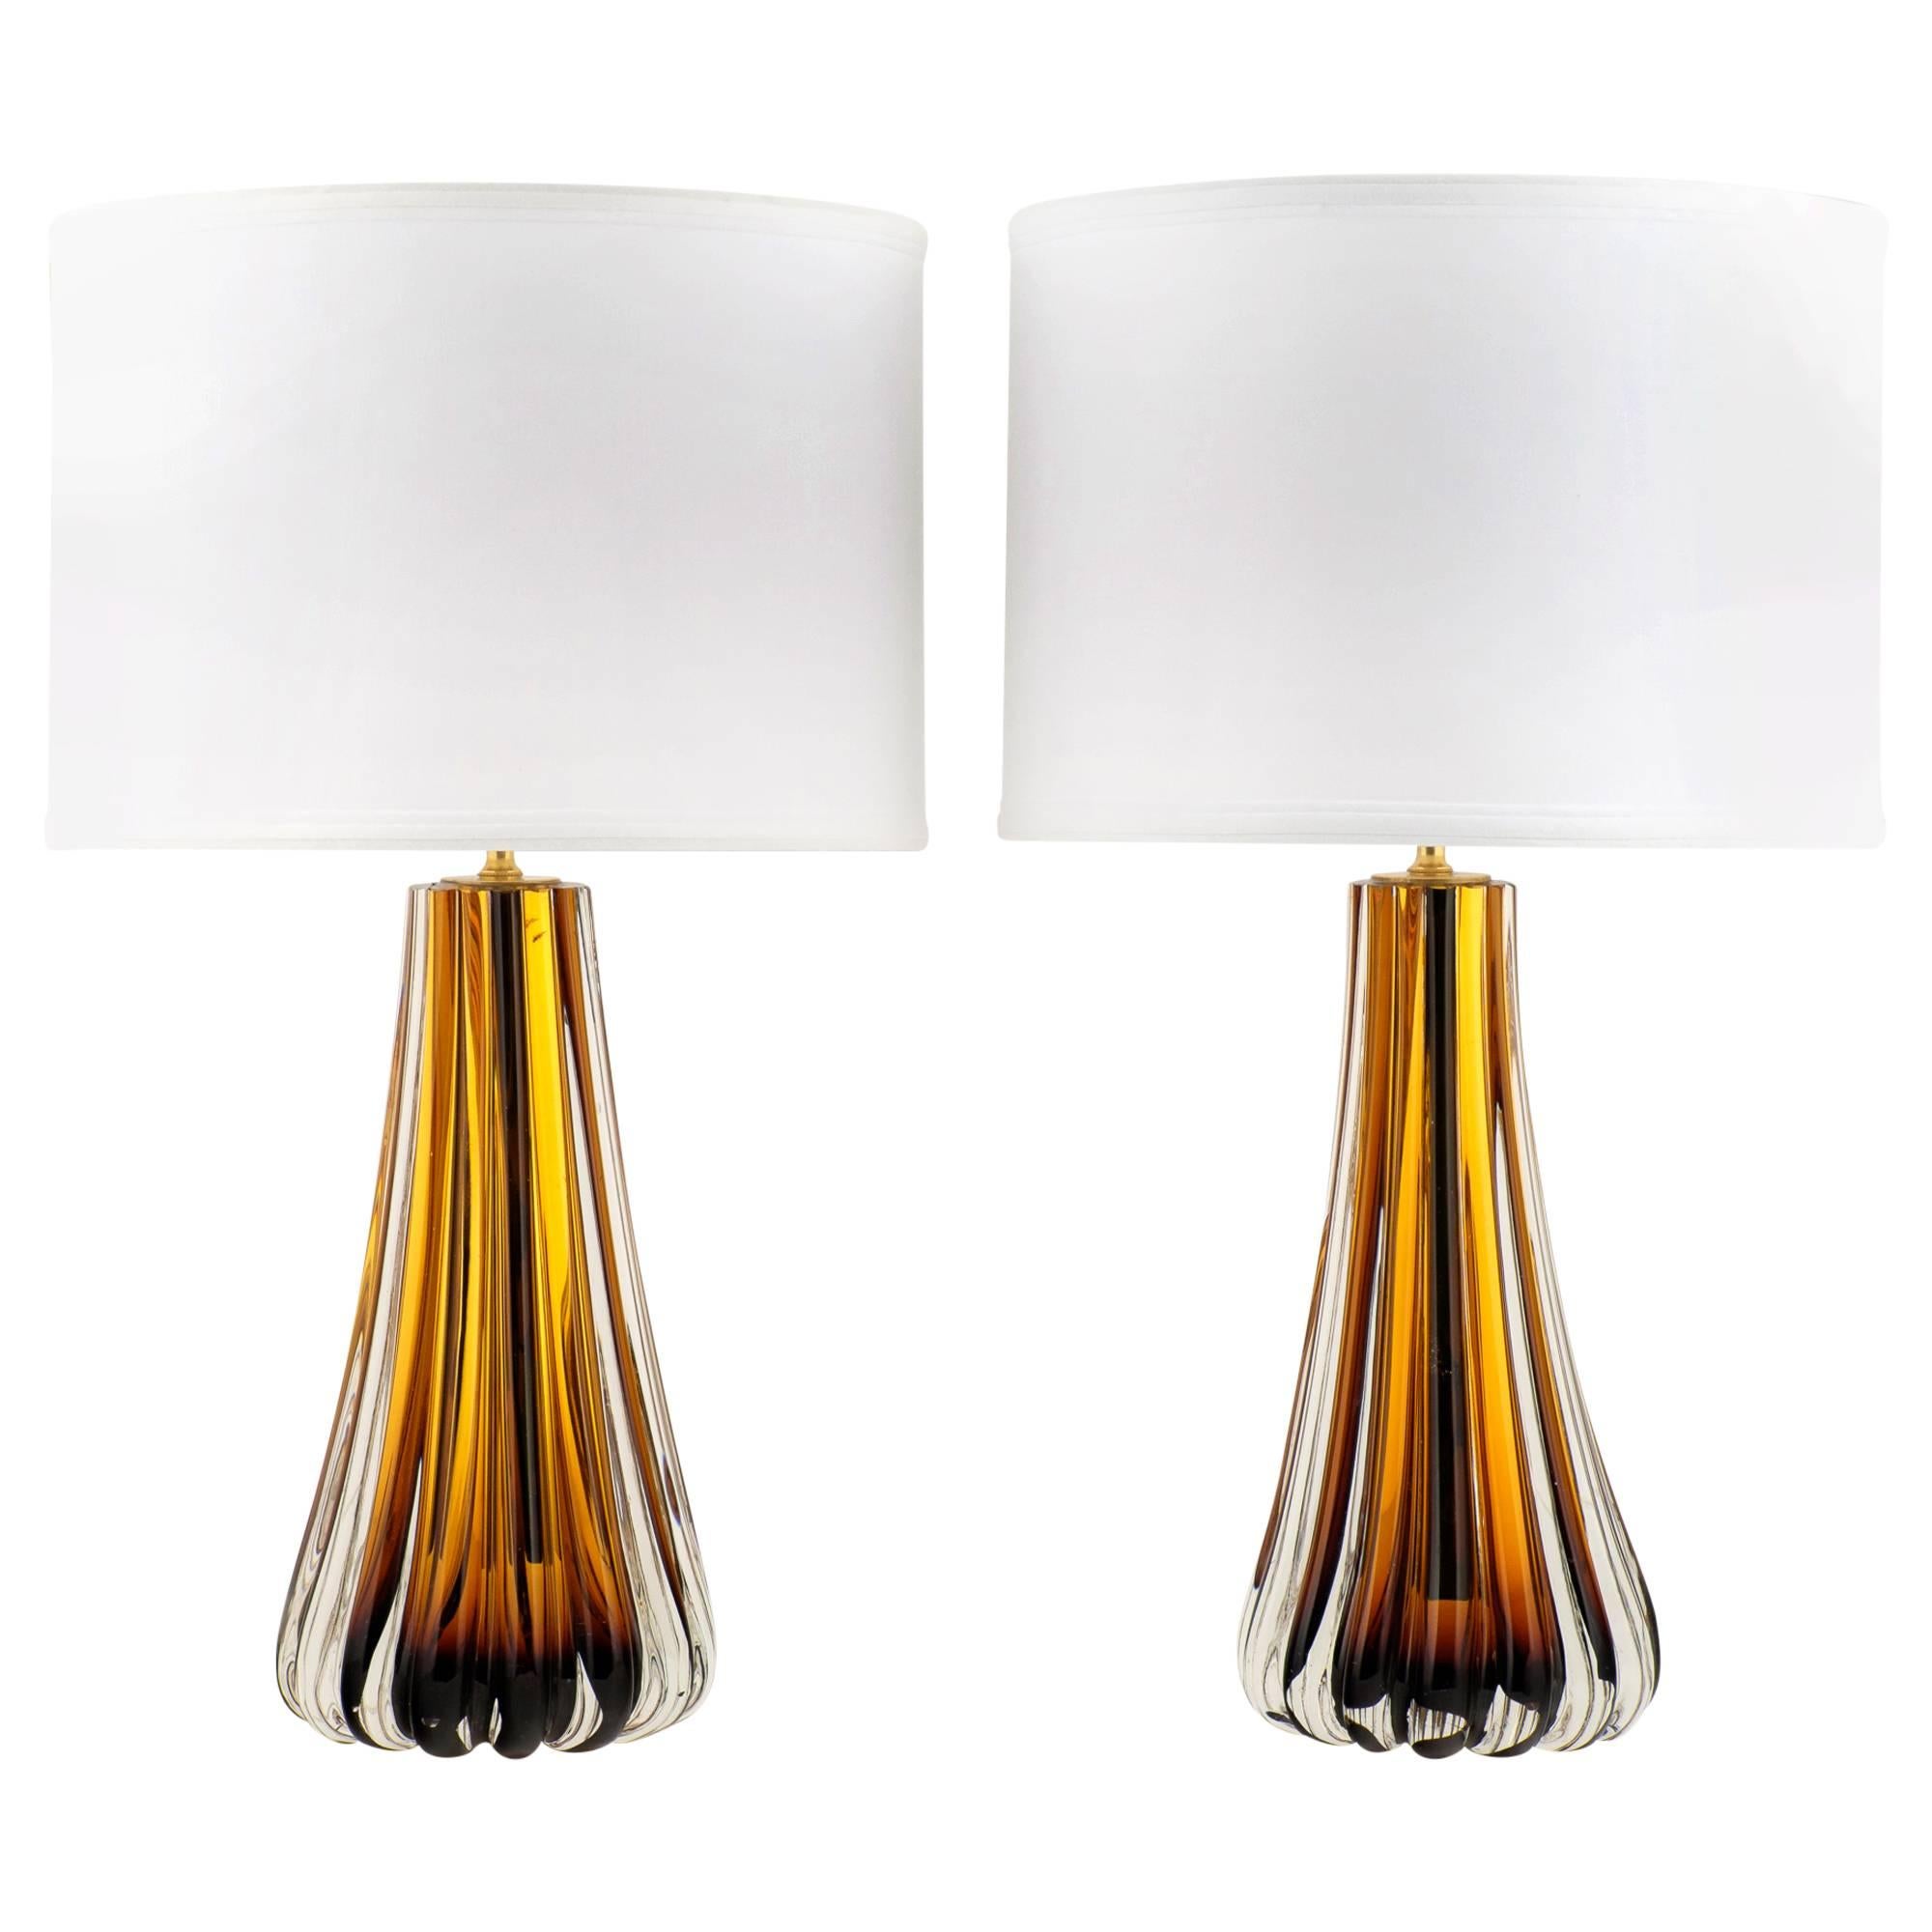 Murano Amber Glass Pair of Lamps